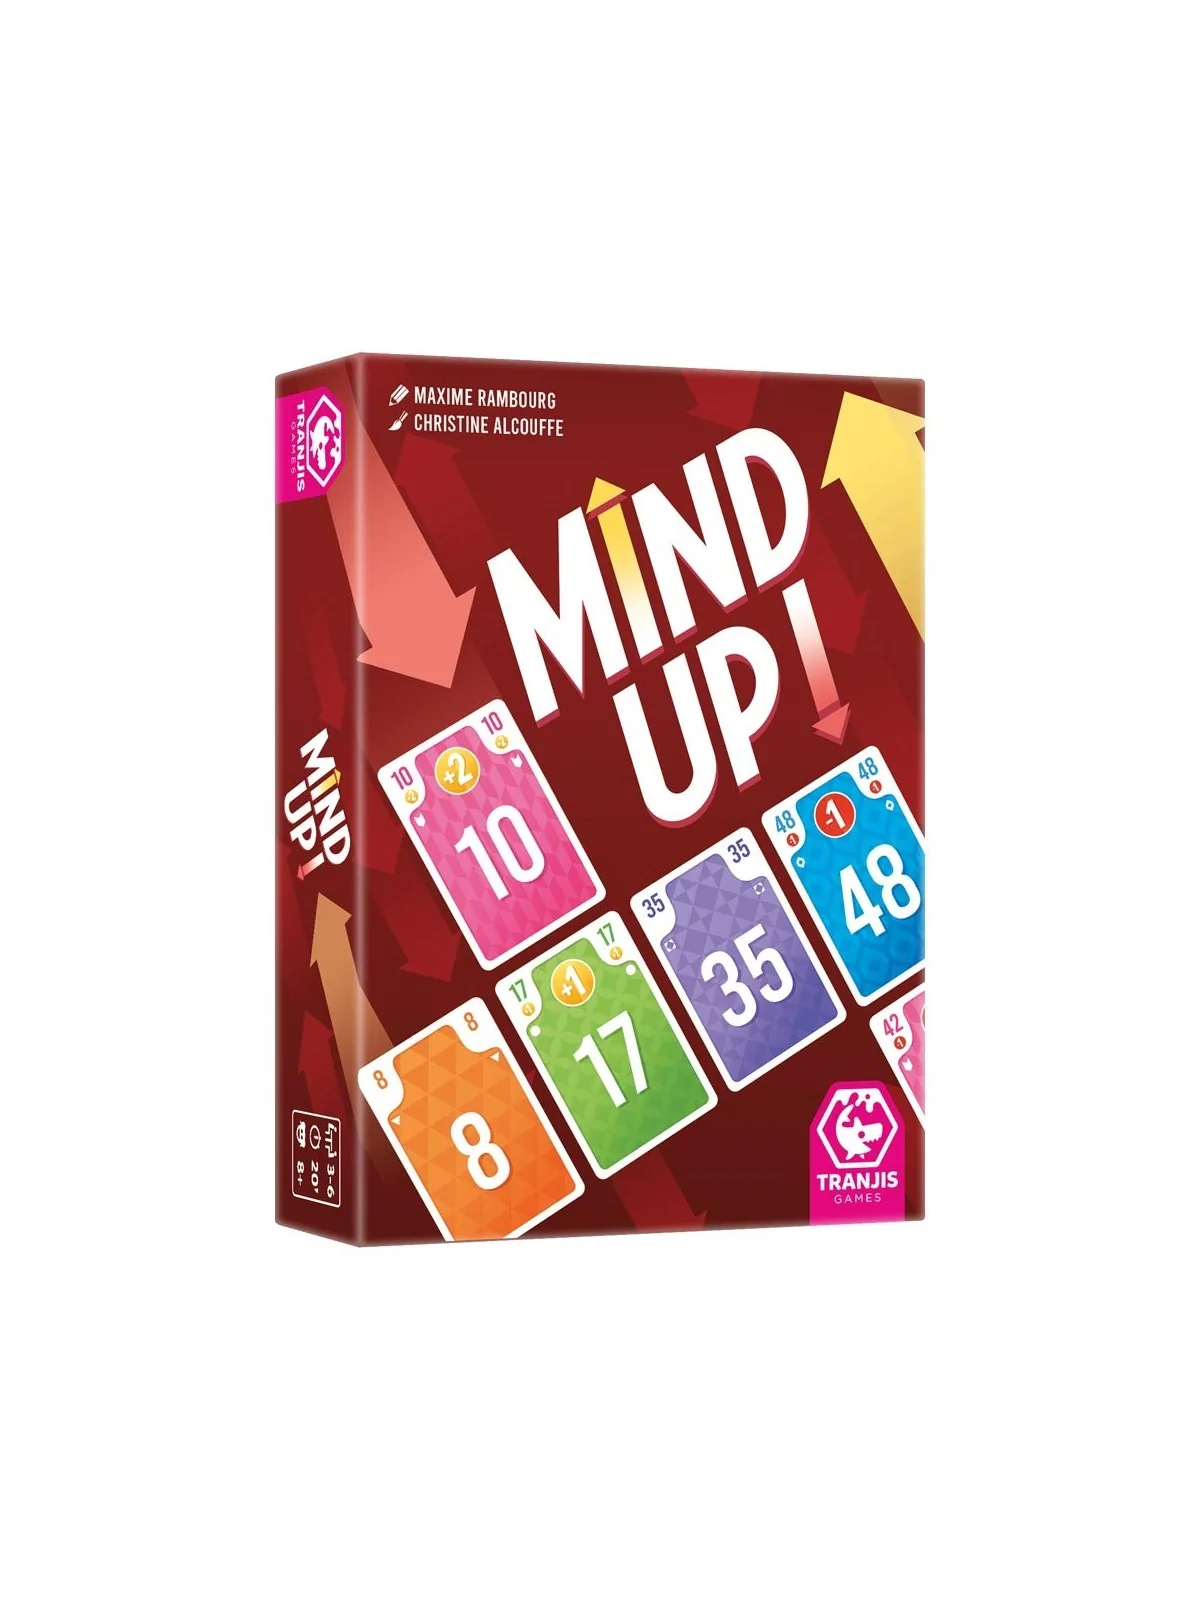 Comprar Mind Up! barato al mejor precio 12,71 € de Tranjis Games